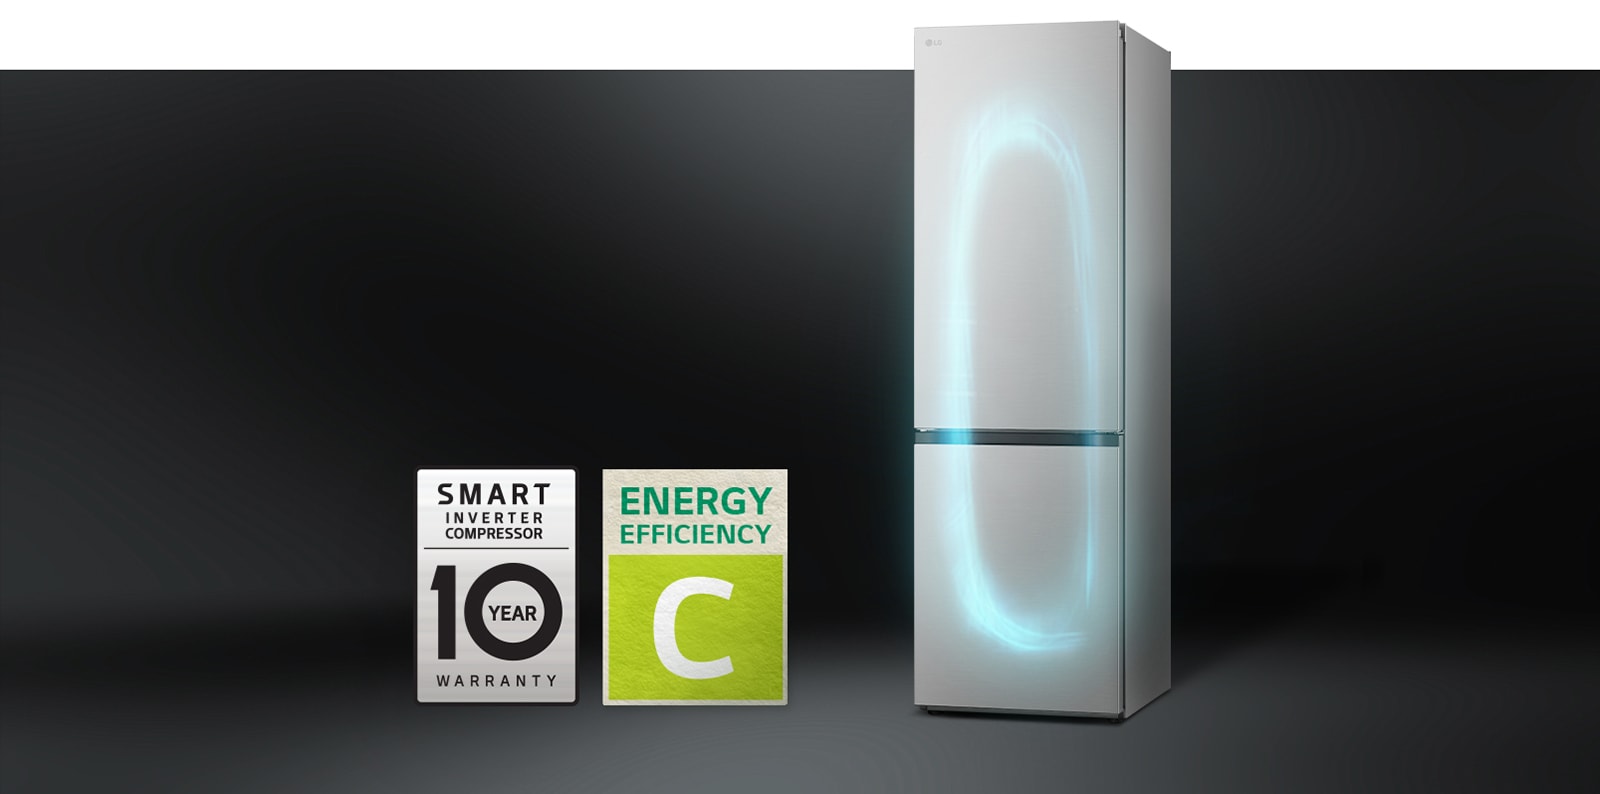 Réfrigérateur avec système de refroidissement efficace par smart inverter compressor et étiquette de garantie de 10 ans du compresseur.